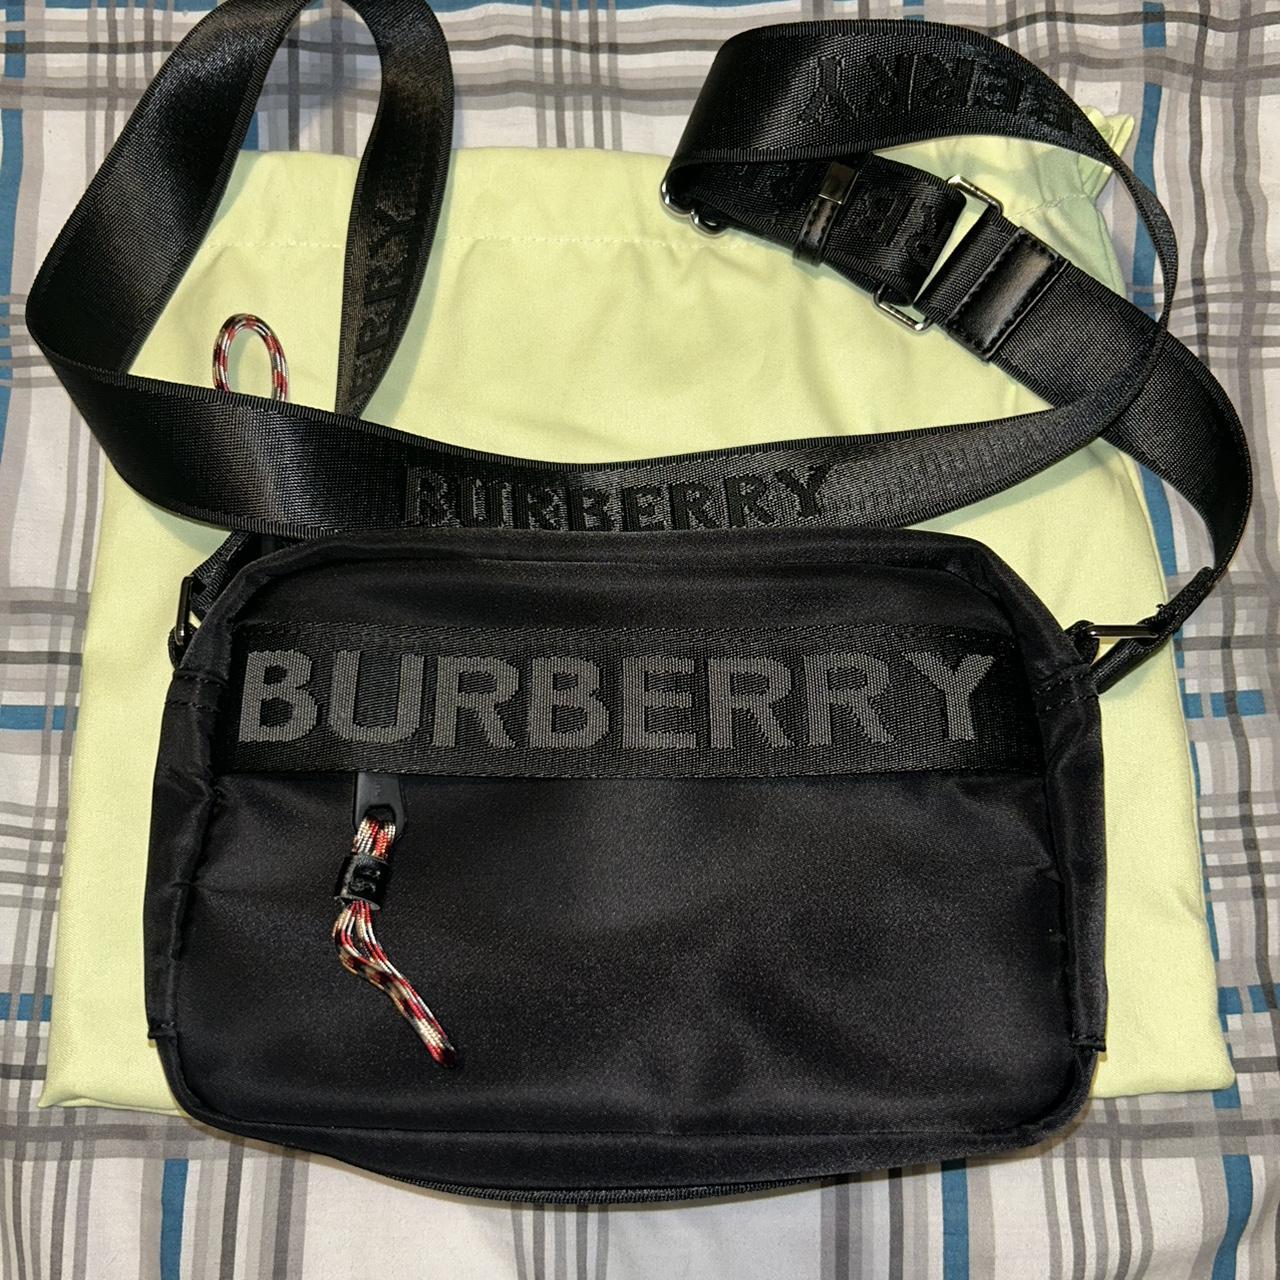 Black Burberry shoulder bag. Worn a couple of times,... - Depop